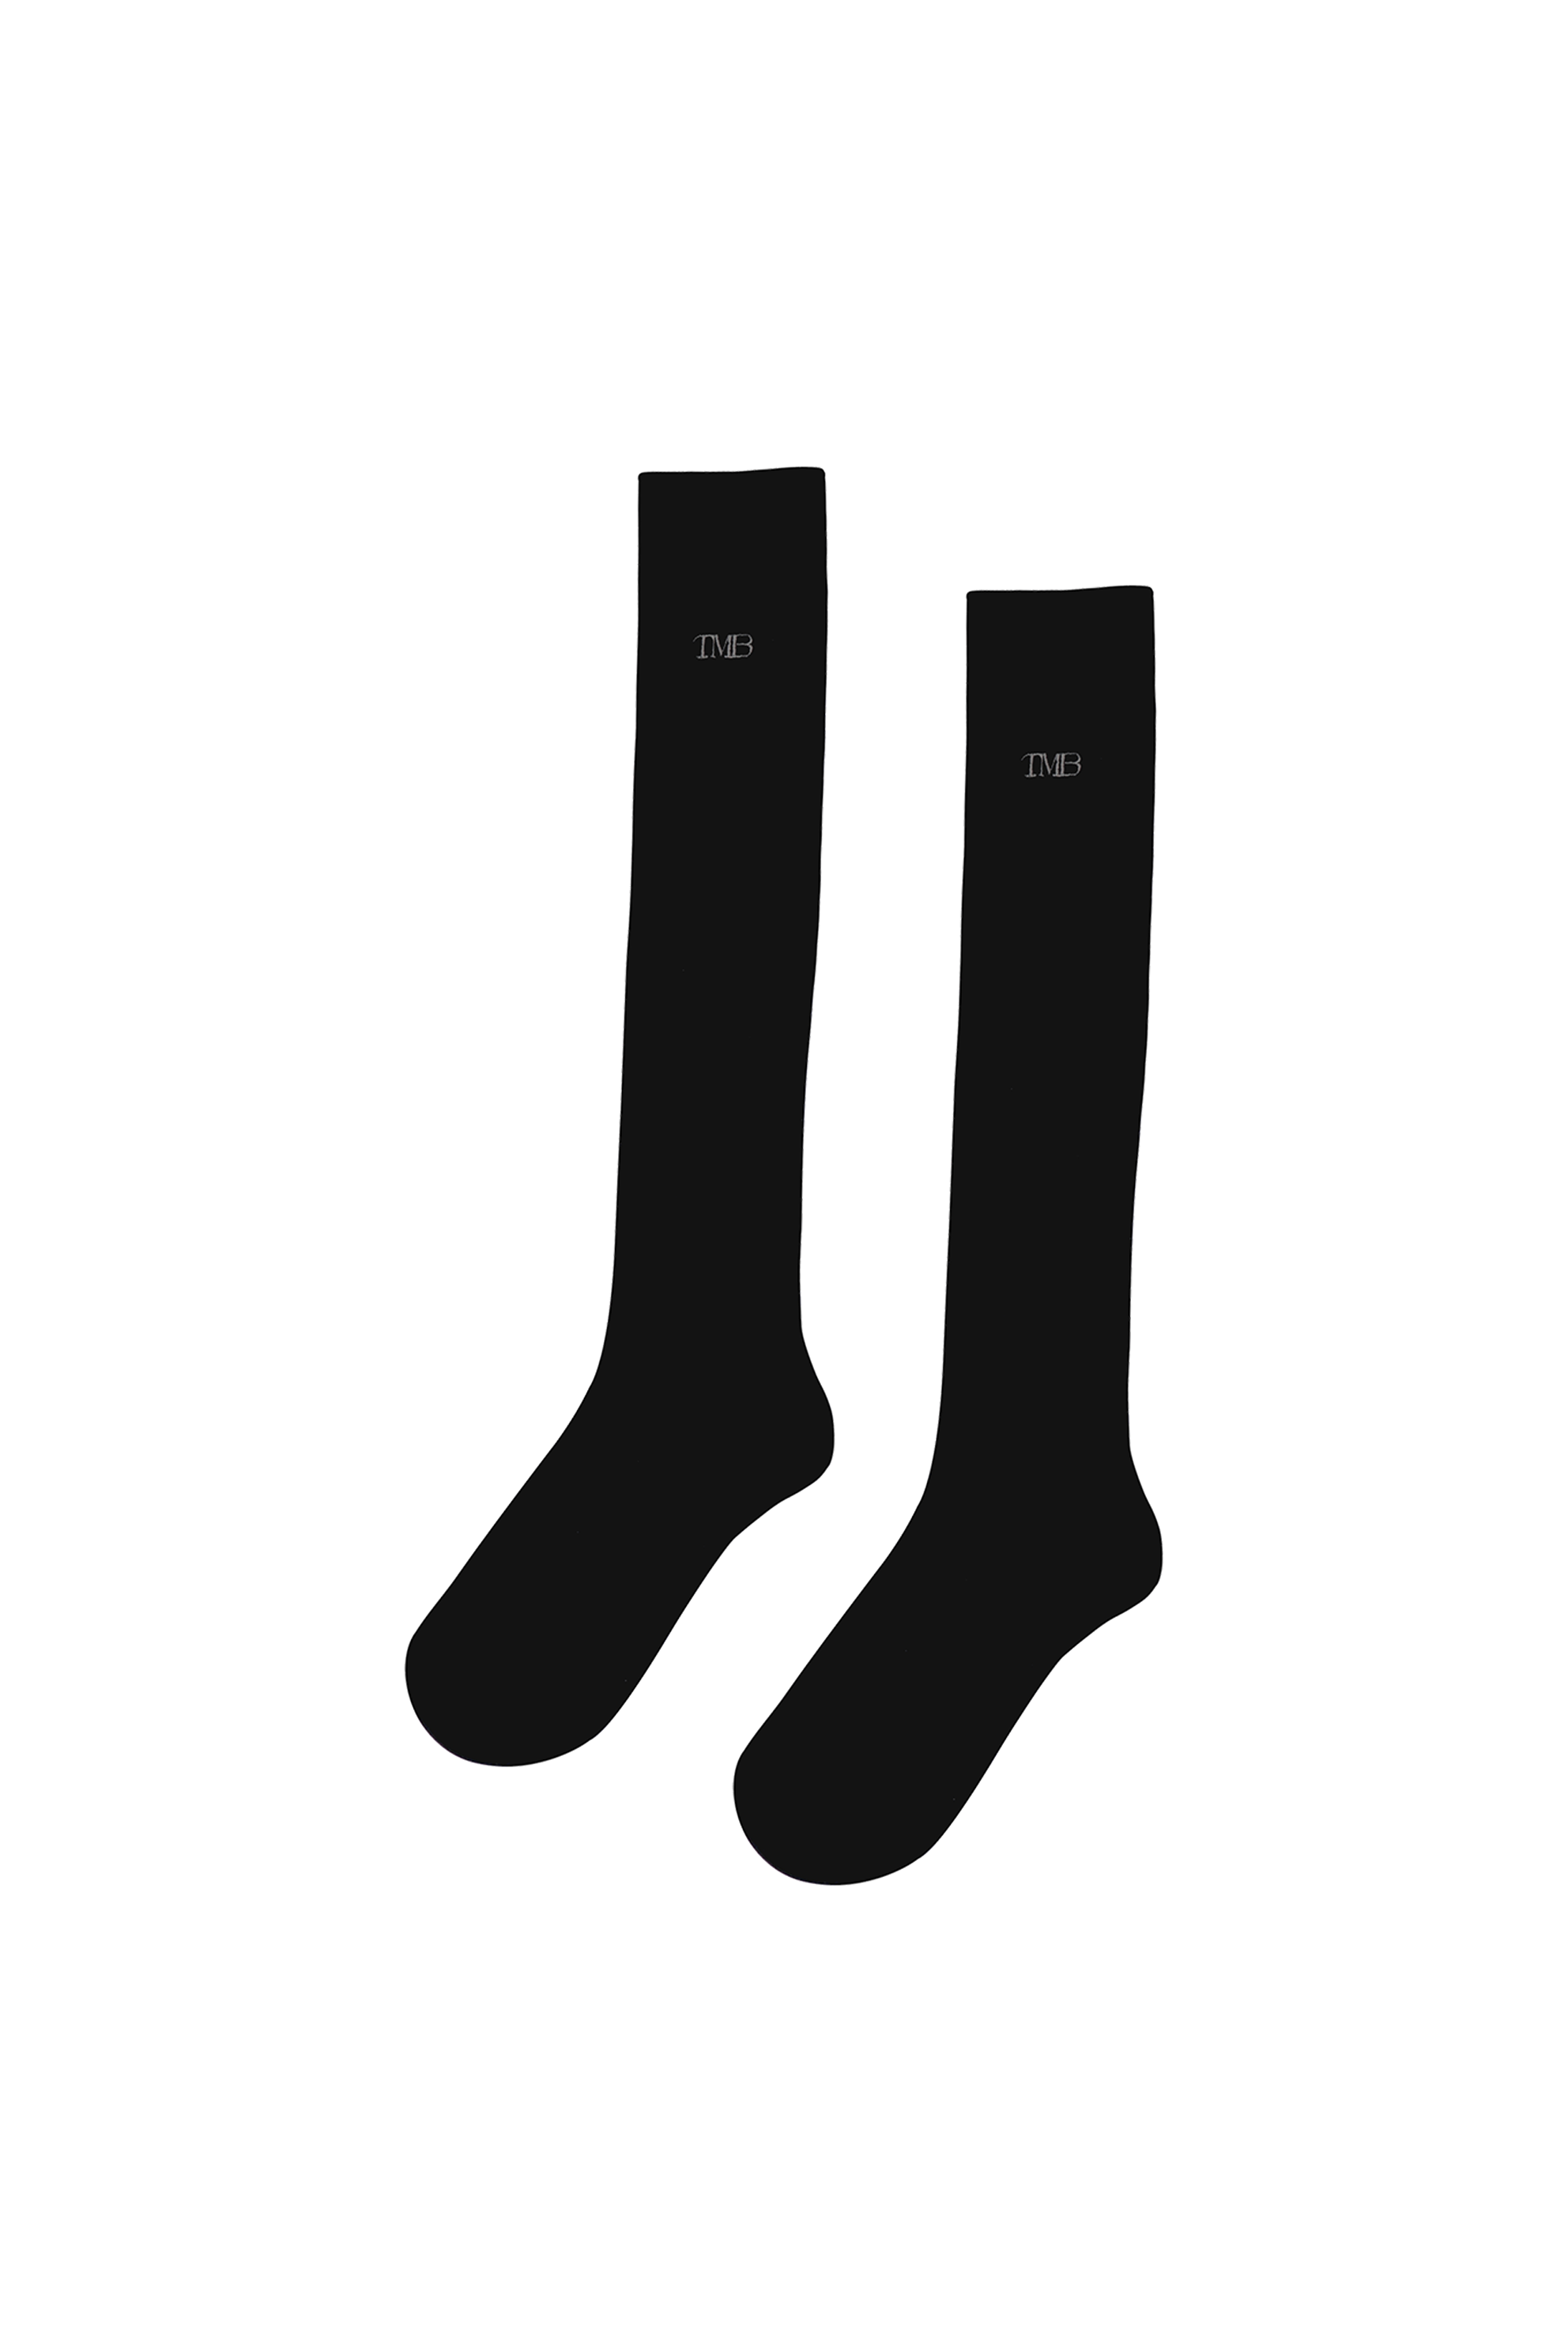 TMB Knee Socks [ Black ]